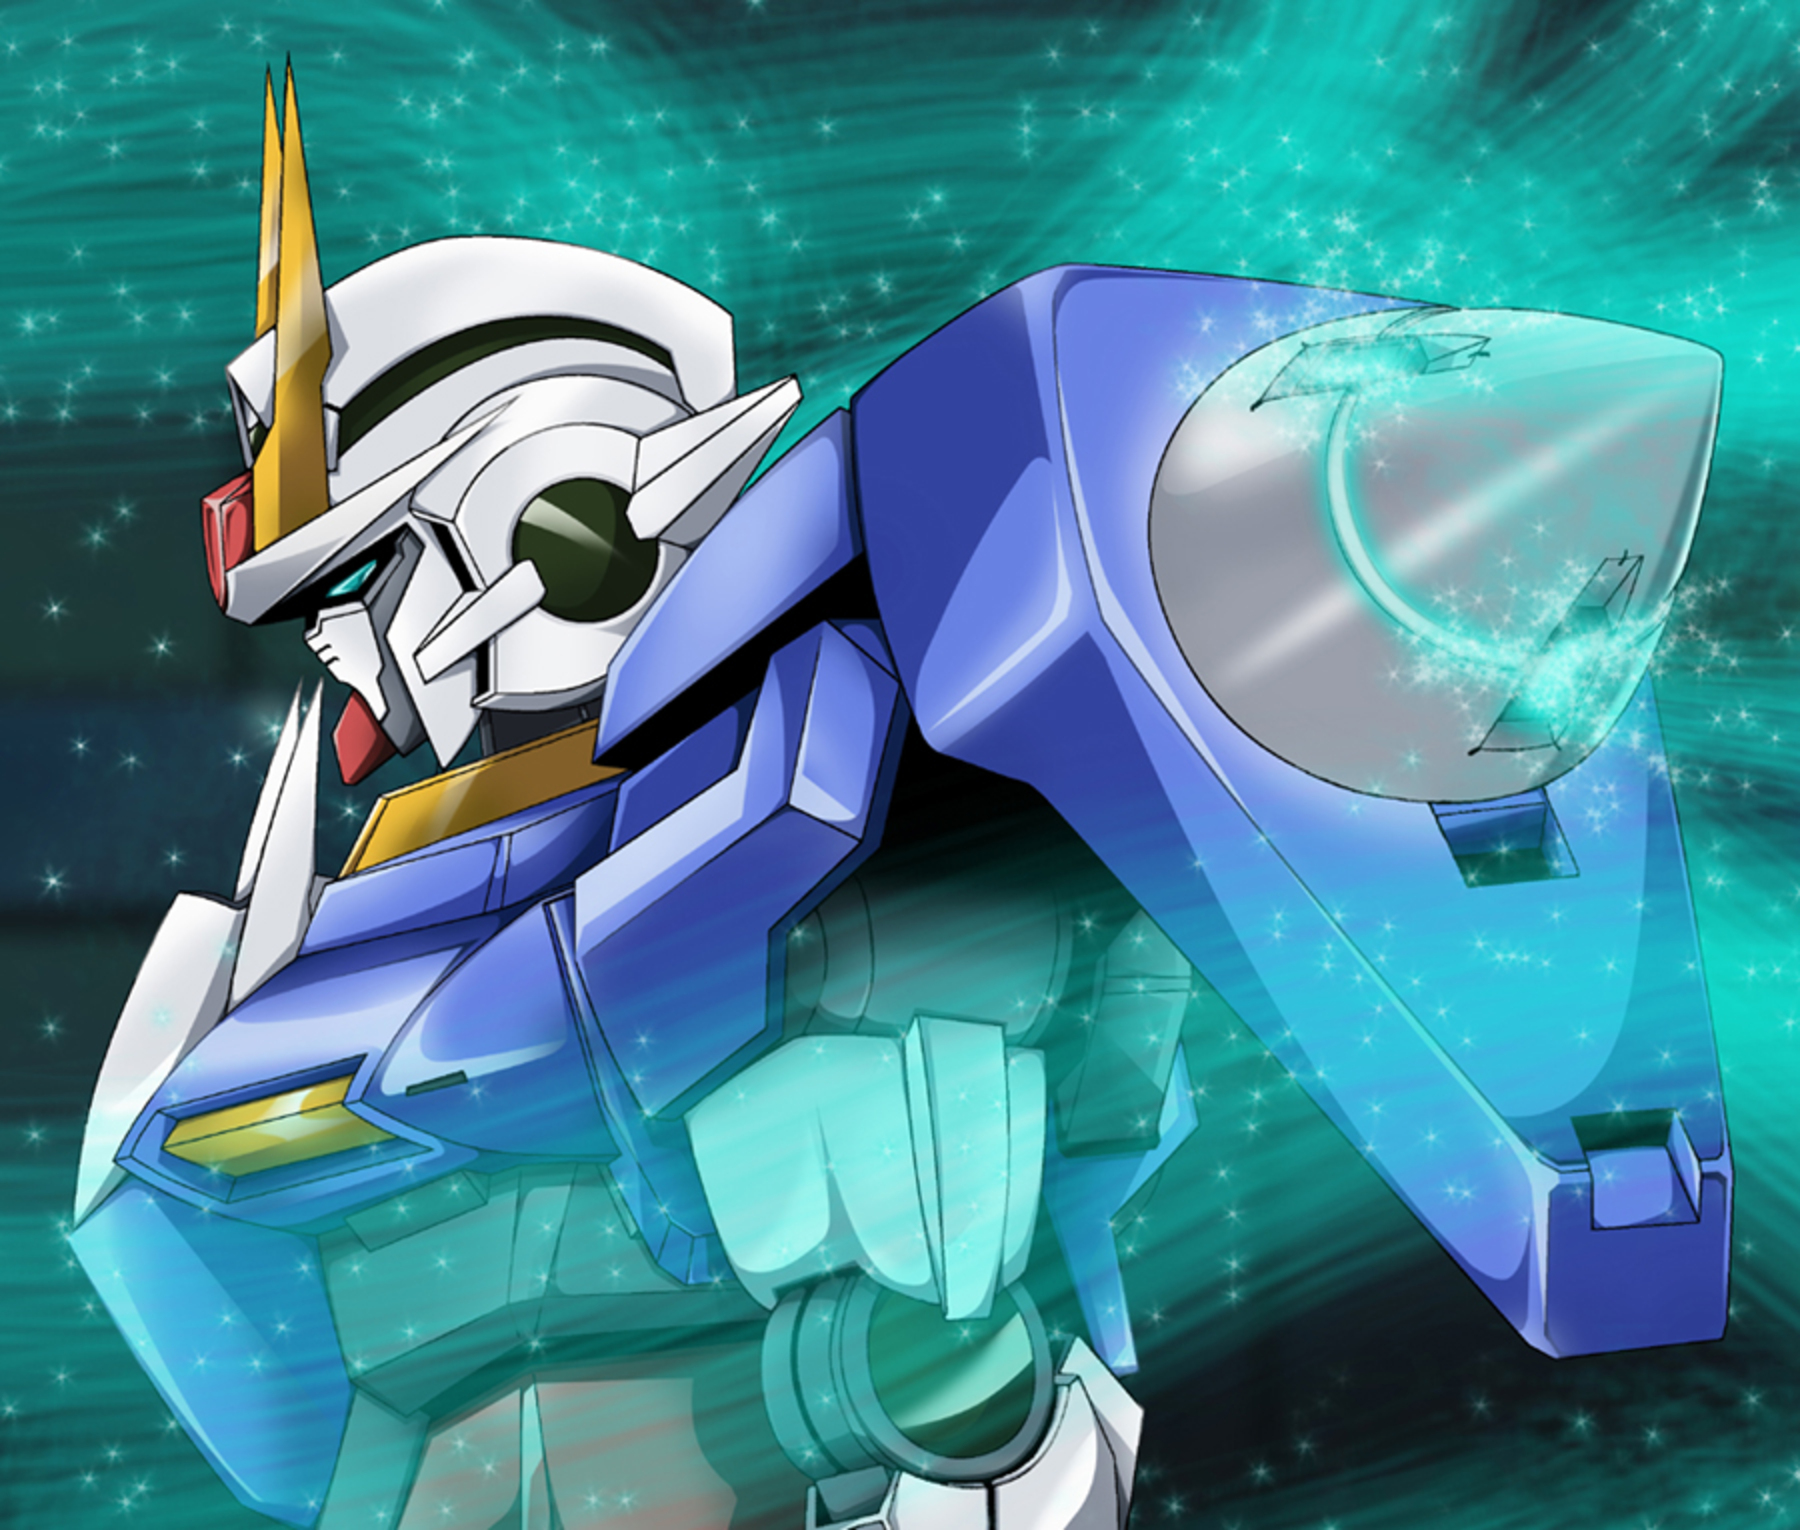 00 Gundam Mobile Suit Gundam 00 Anime Mechs Gundam Super Robot Wars Artwork Digital Art Fan Art 1800x1530